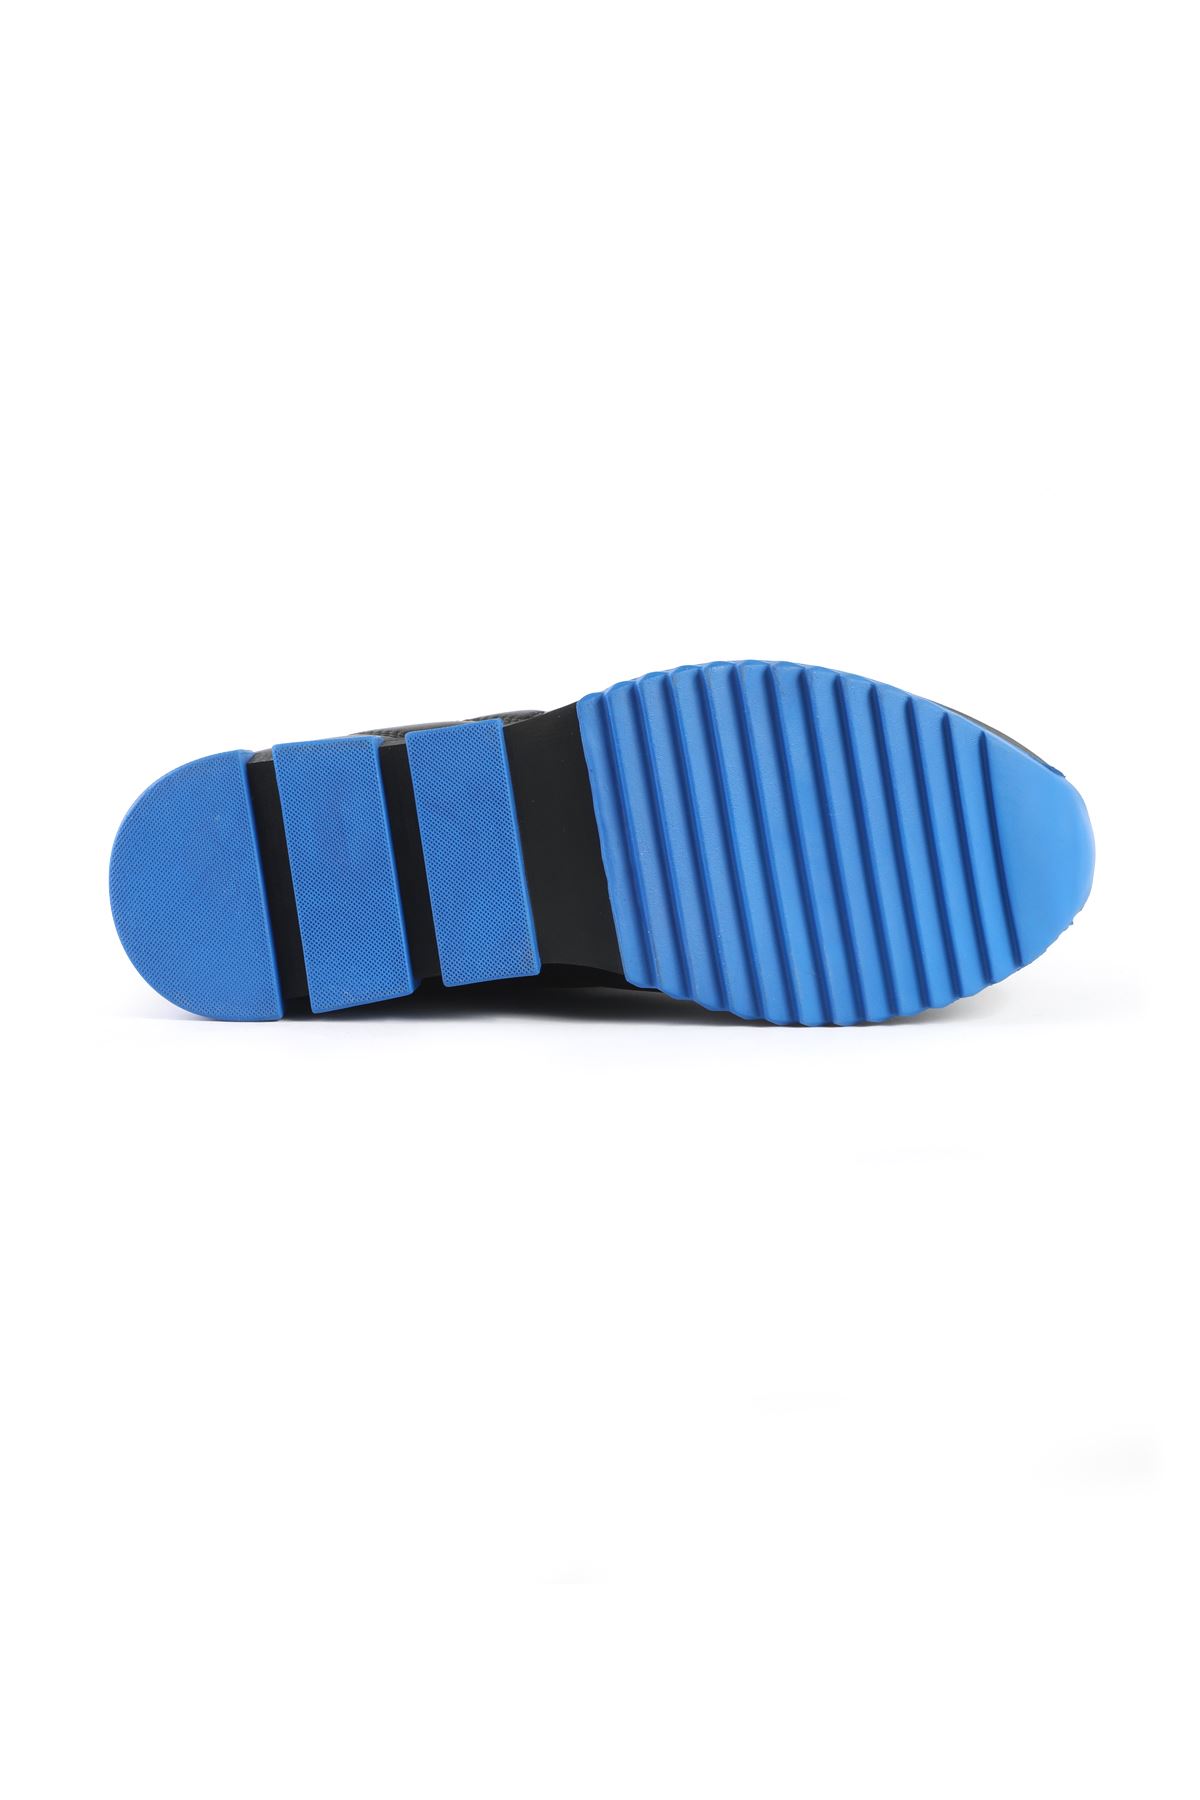 Libero 3392 S.Mavi Spor Ayakkabı 